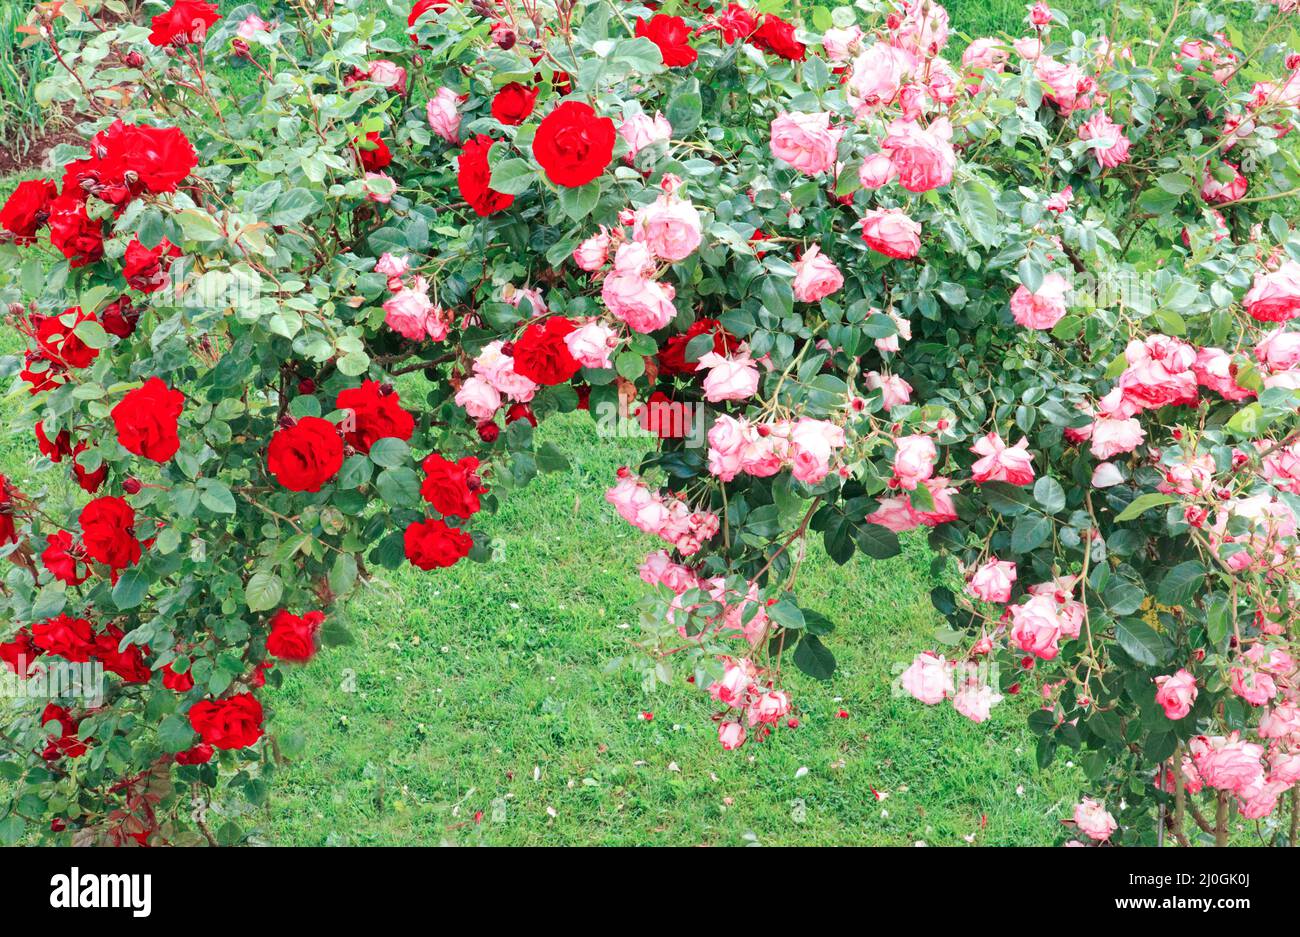 Pergola ricoperta di rose rampicanti rosa e rossa. Foto Stock